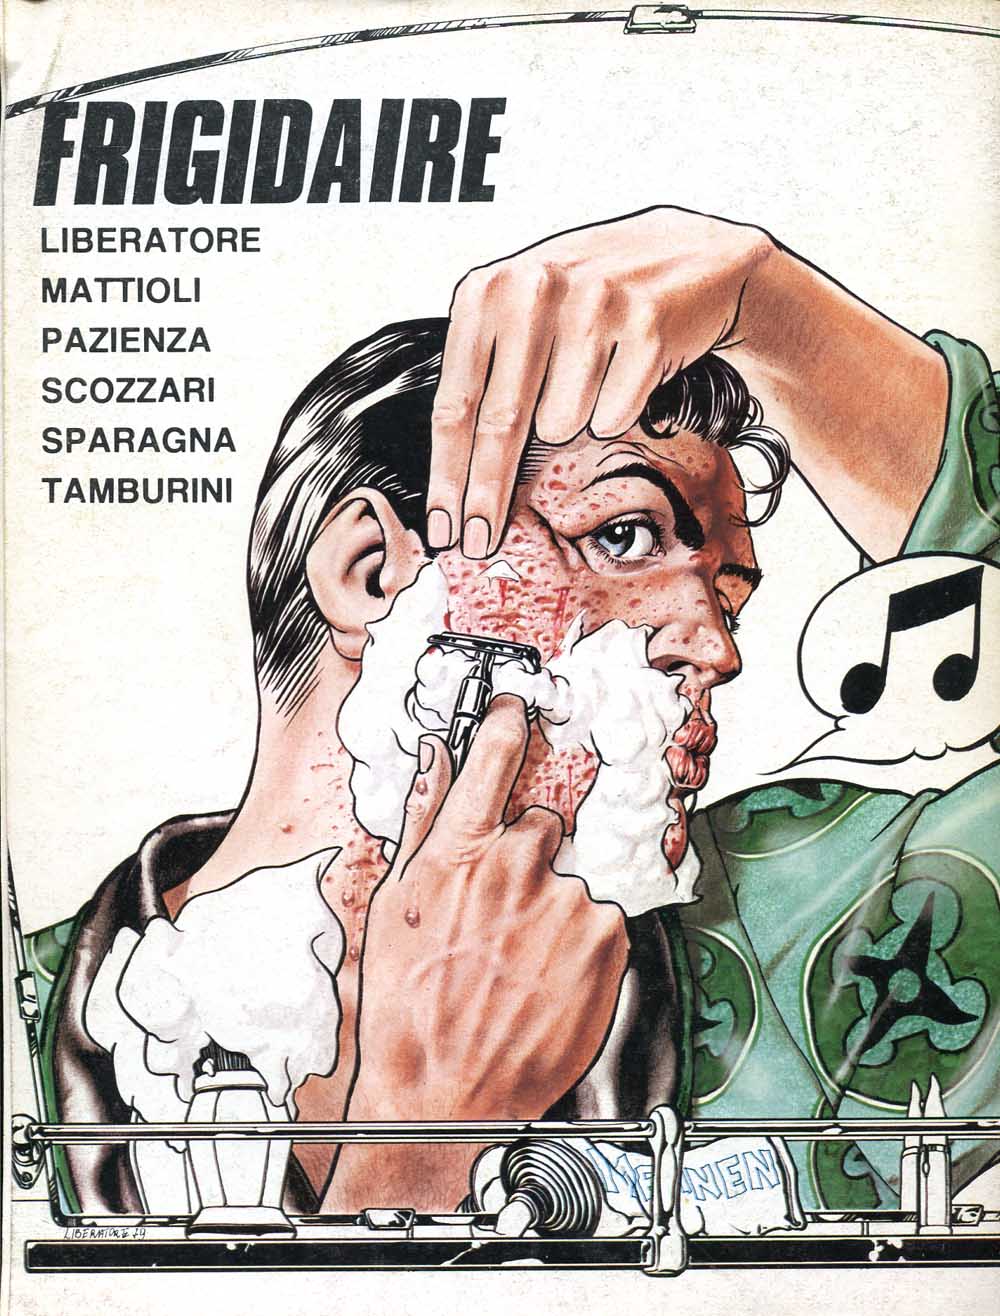 Tanino Liberatore, Frigidaire n.1, quarta di copertina